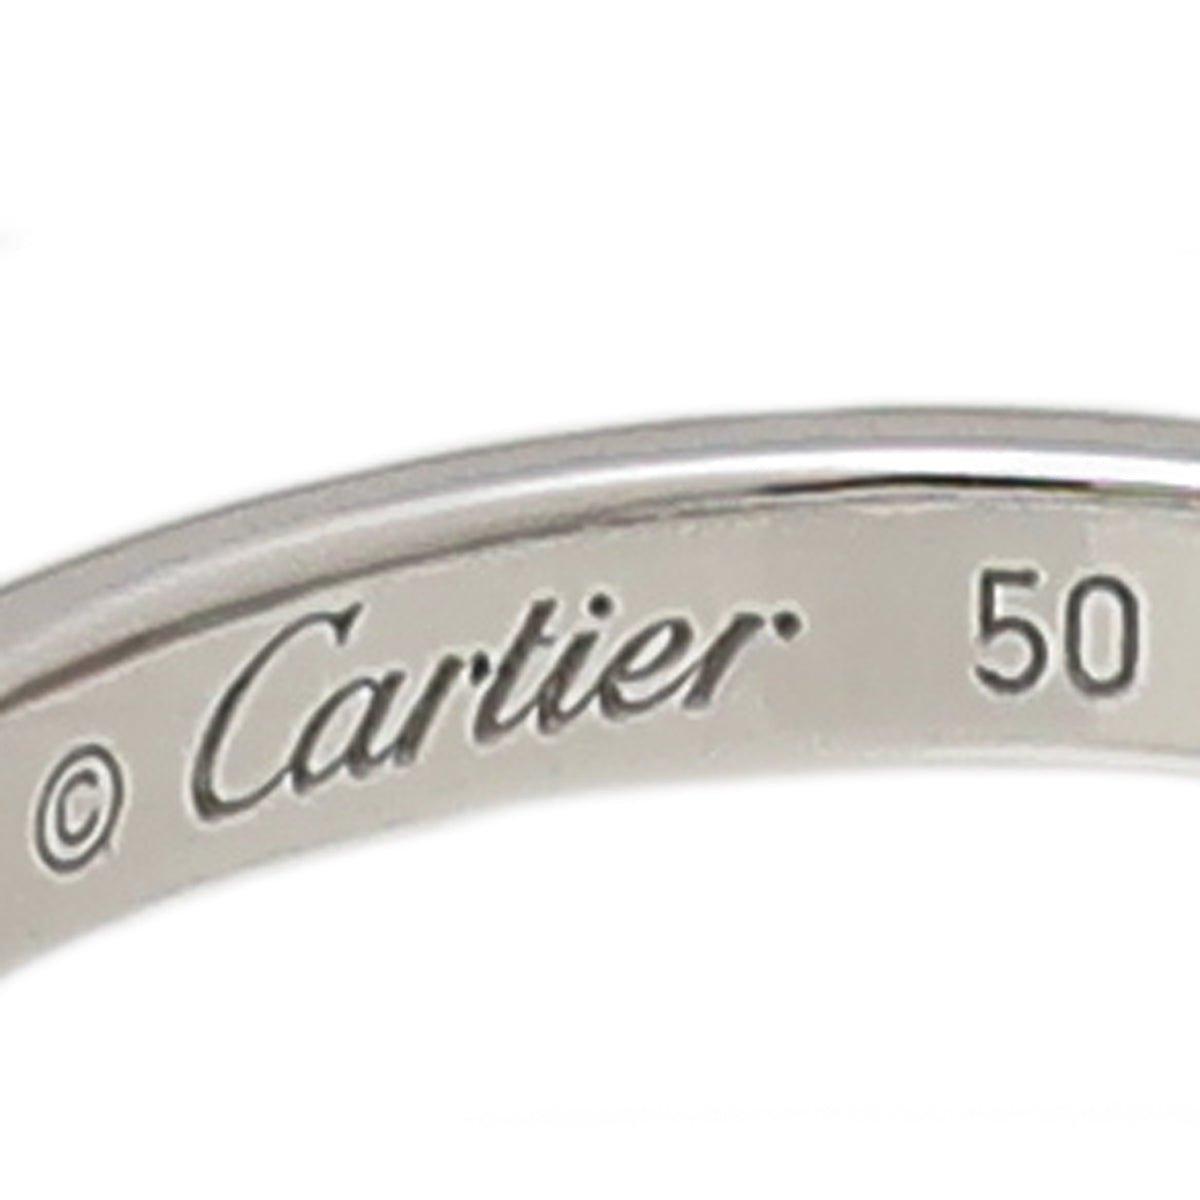 thecloset.uae - Cartier Platinum W- 19 Diamonds Band Ring 50 | The Closet